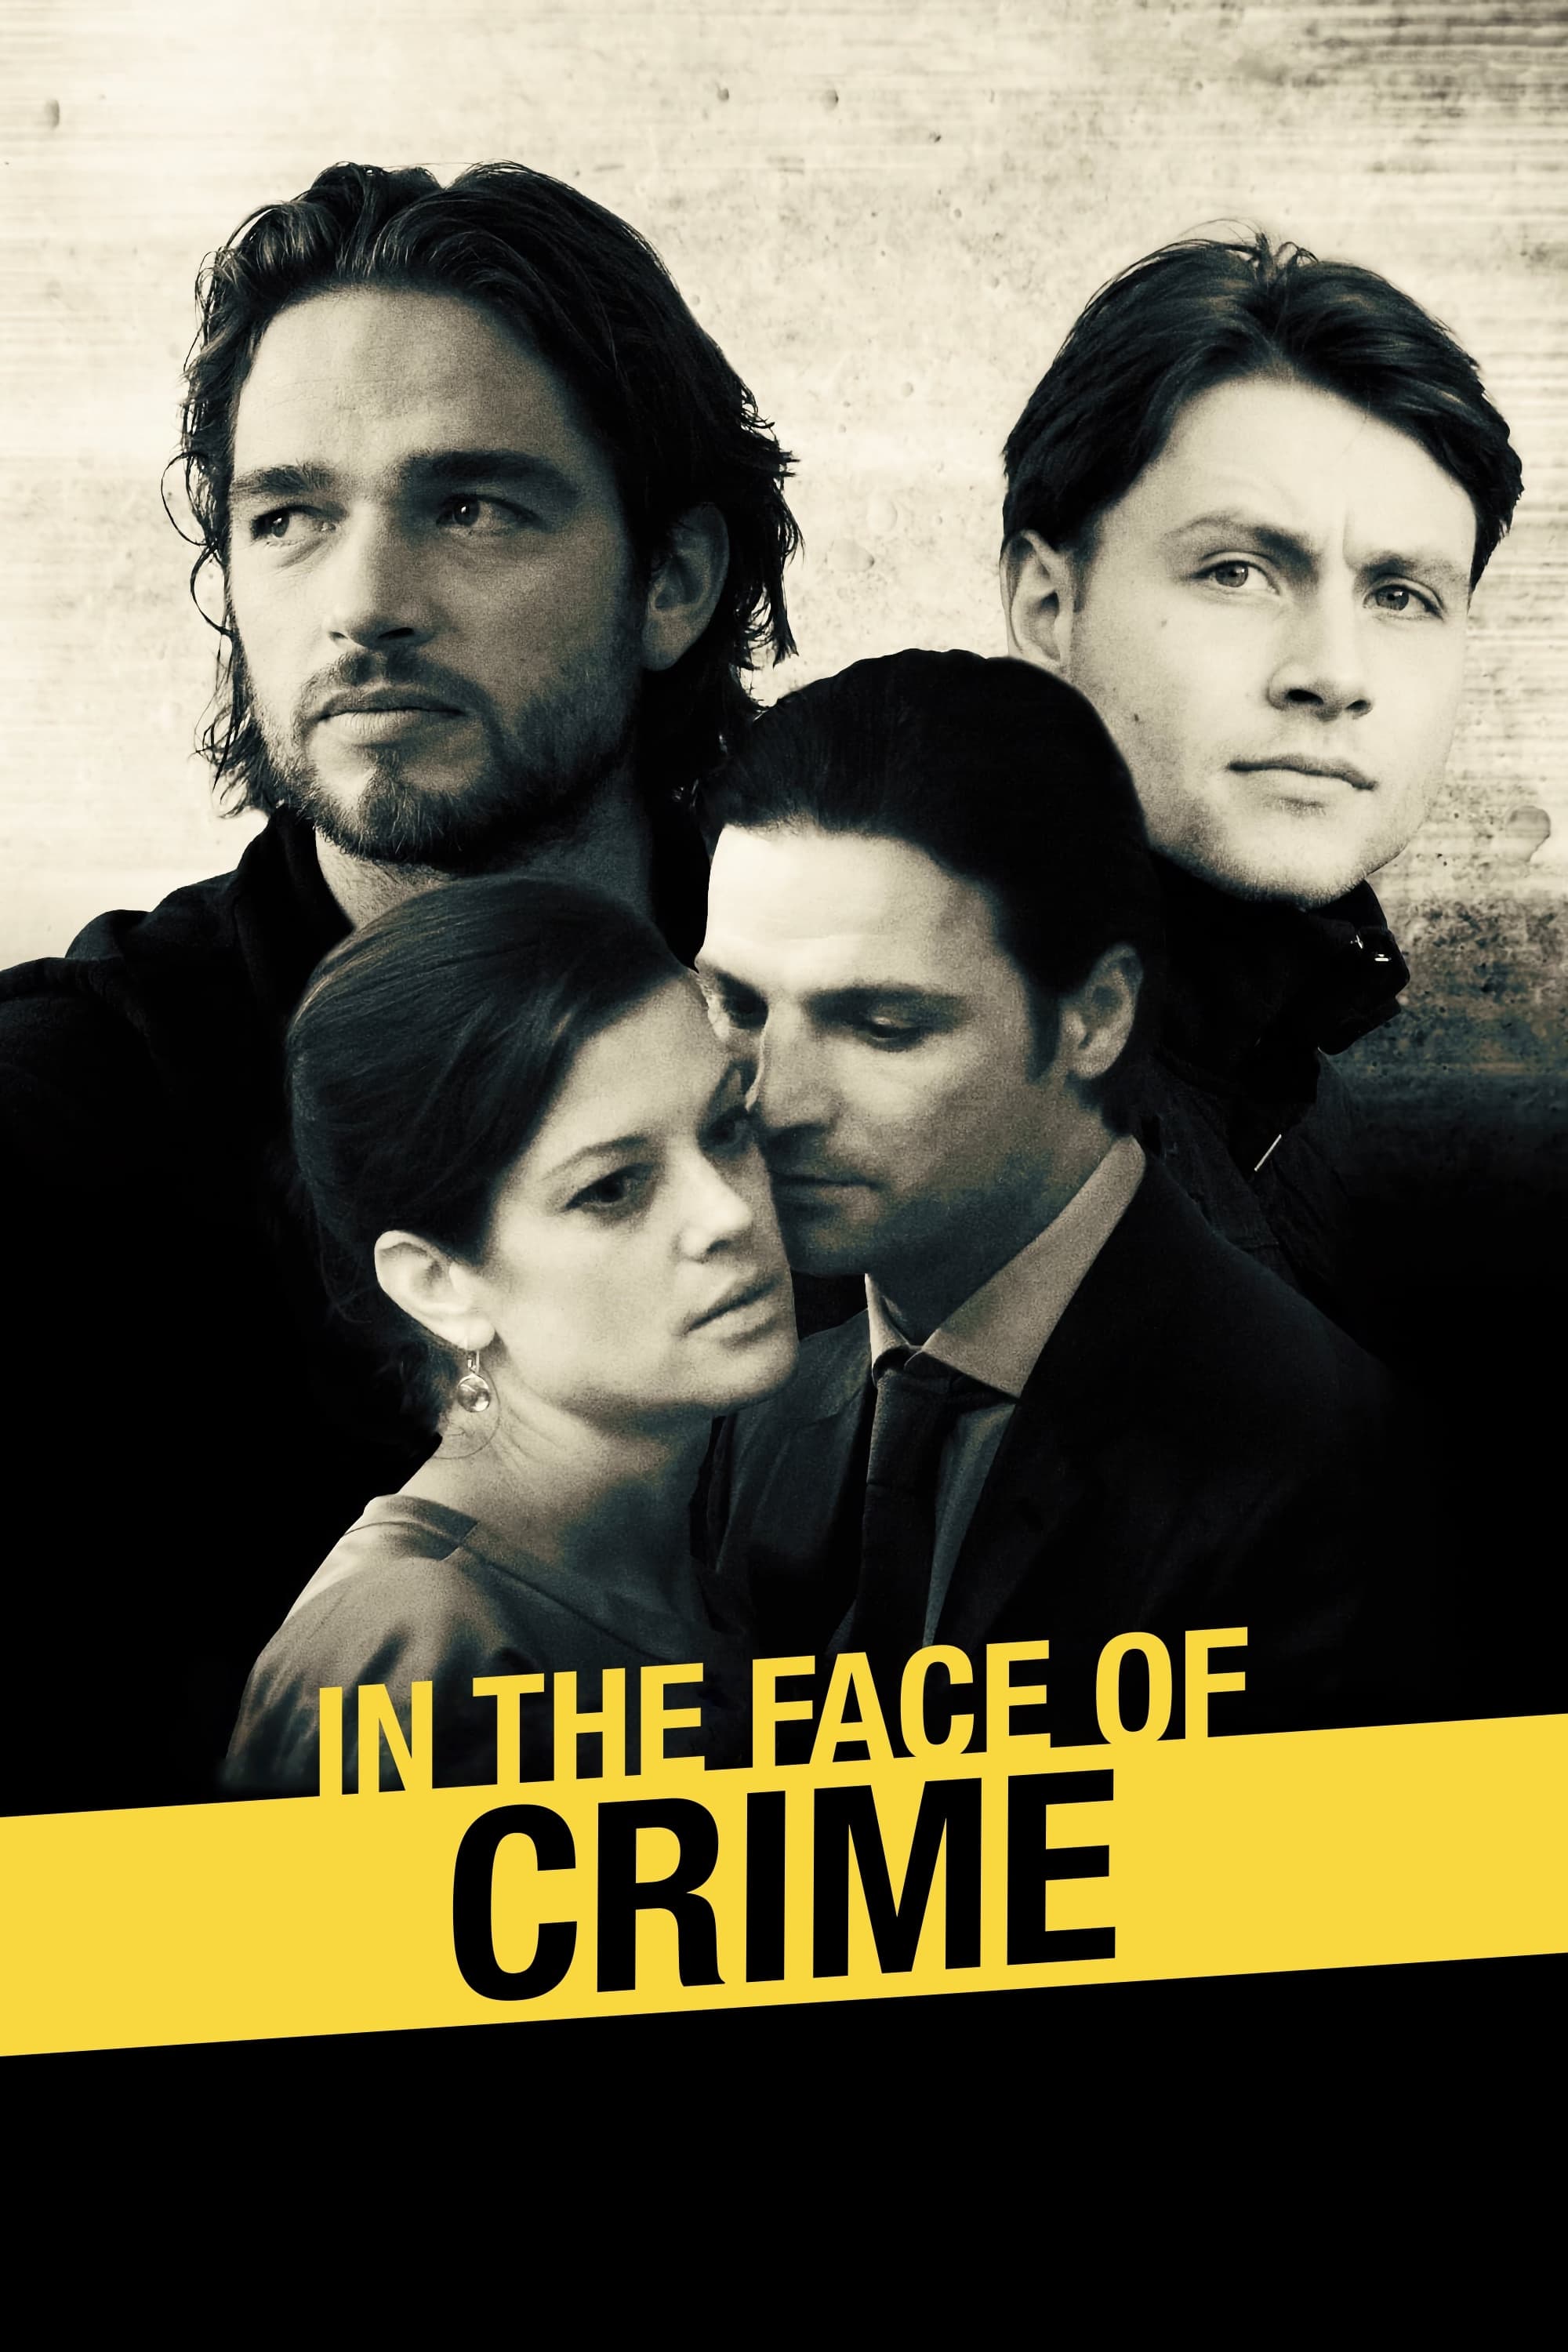 Cita con el crimen (2010)